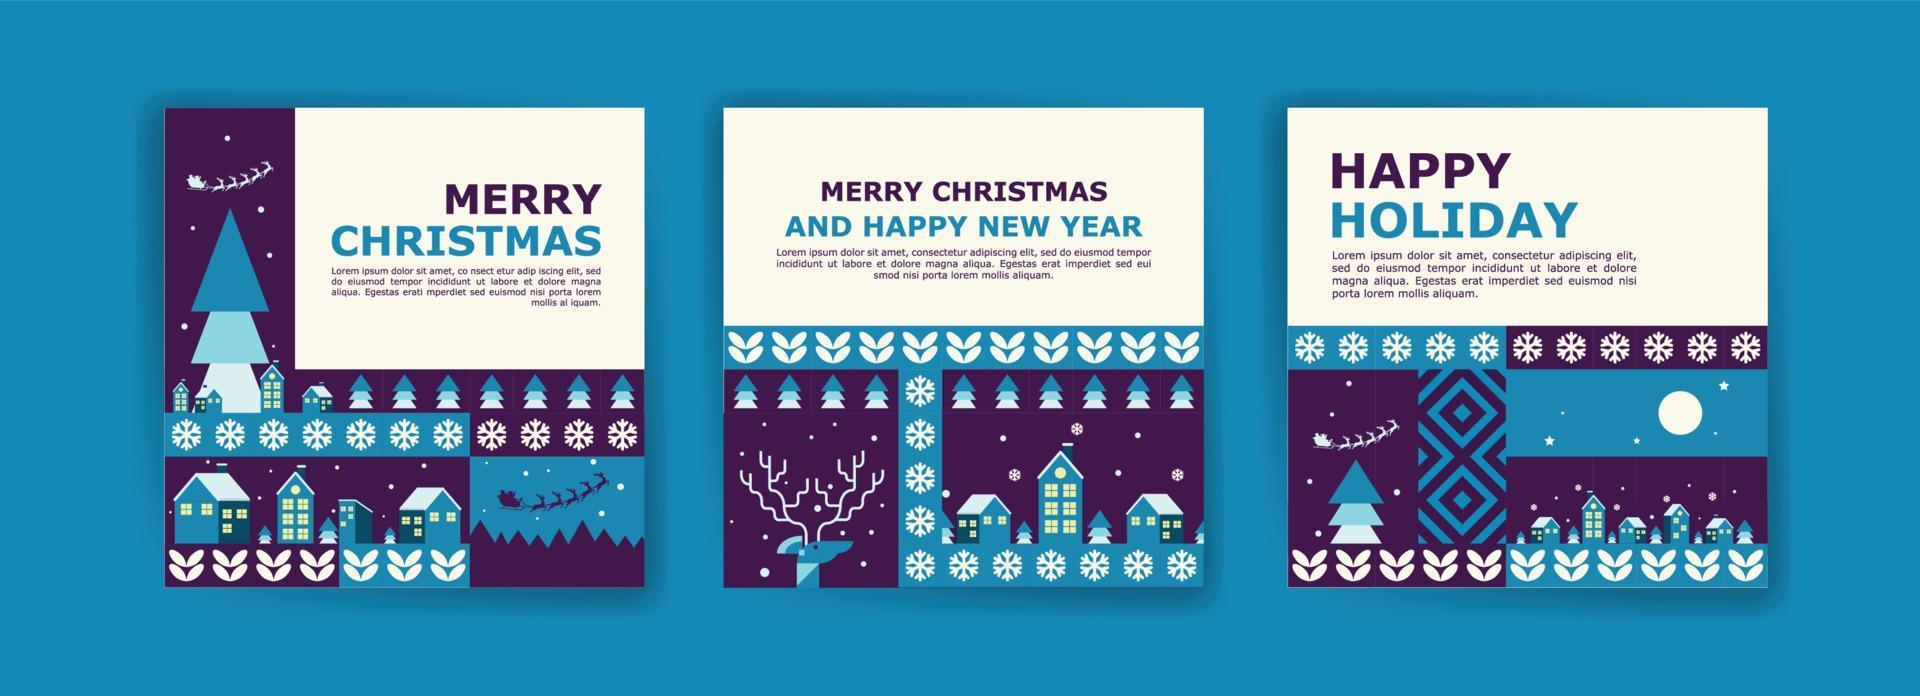 inläggsmall för sociala medier för god jul och nytt år. färgglada geometriska mönster affisch för god jul och nytt år. vektor